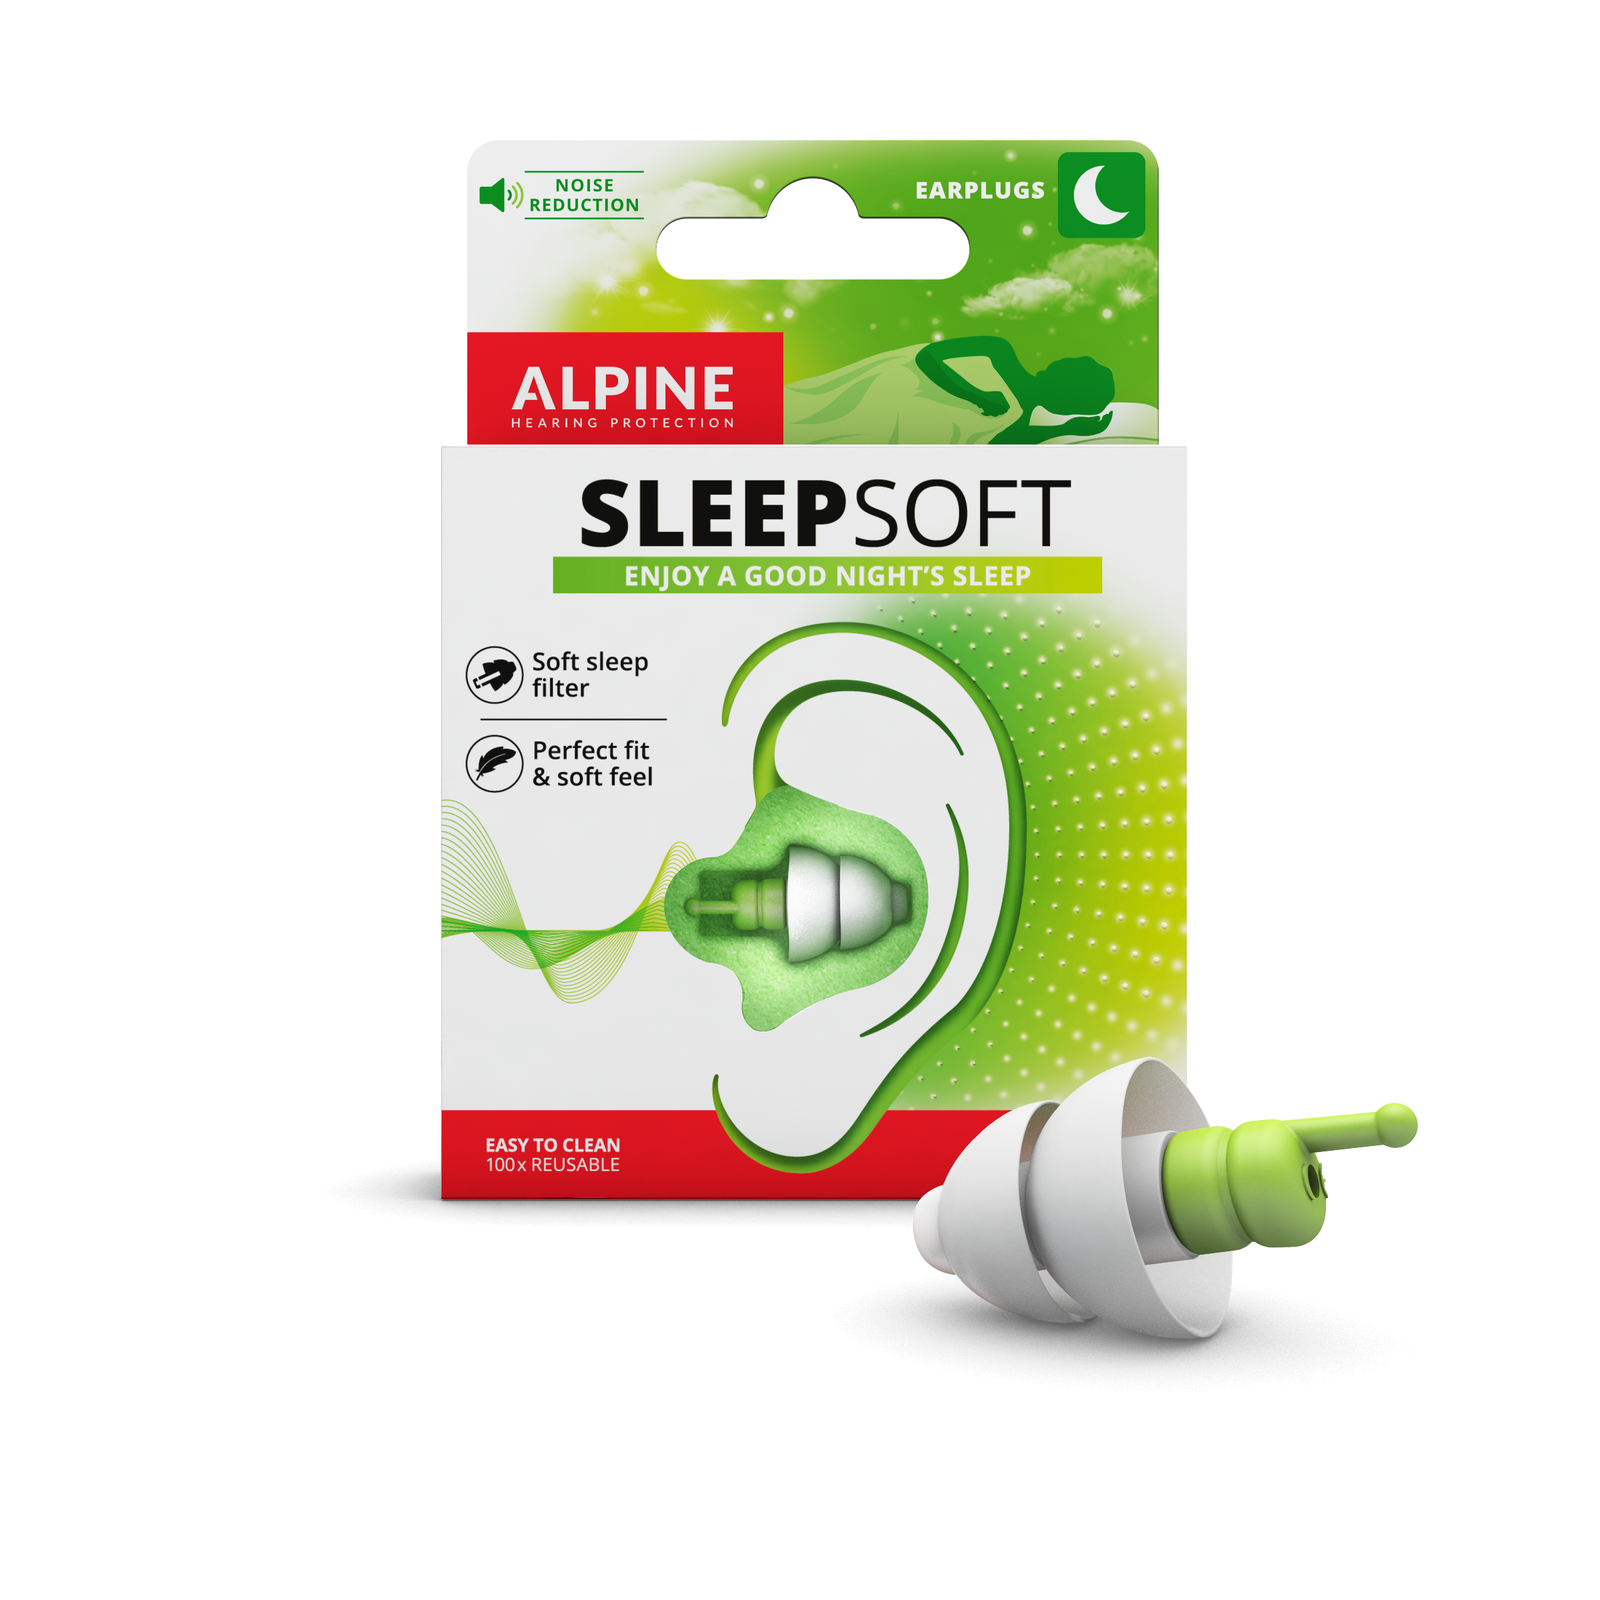 Alpine SleepSoft Oordopjes